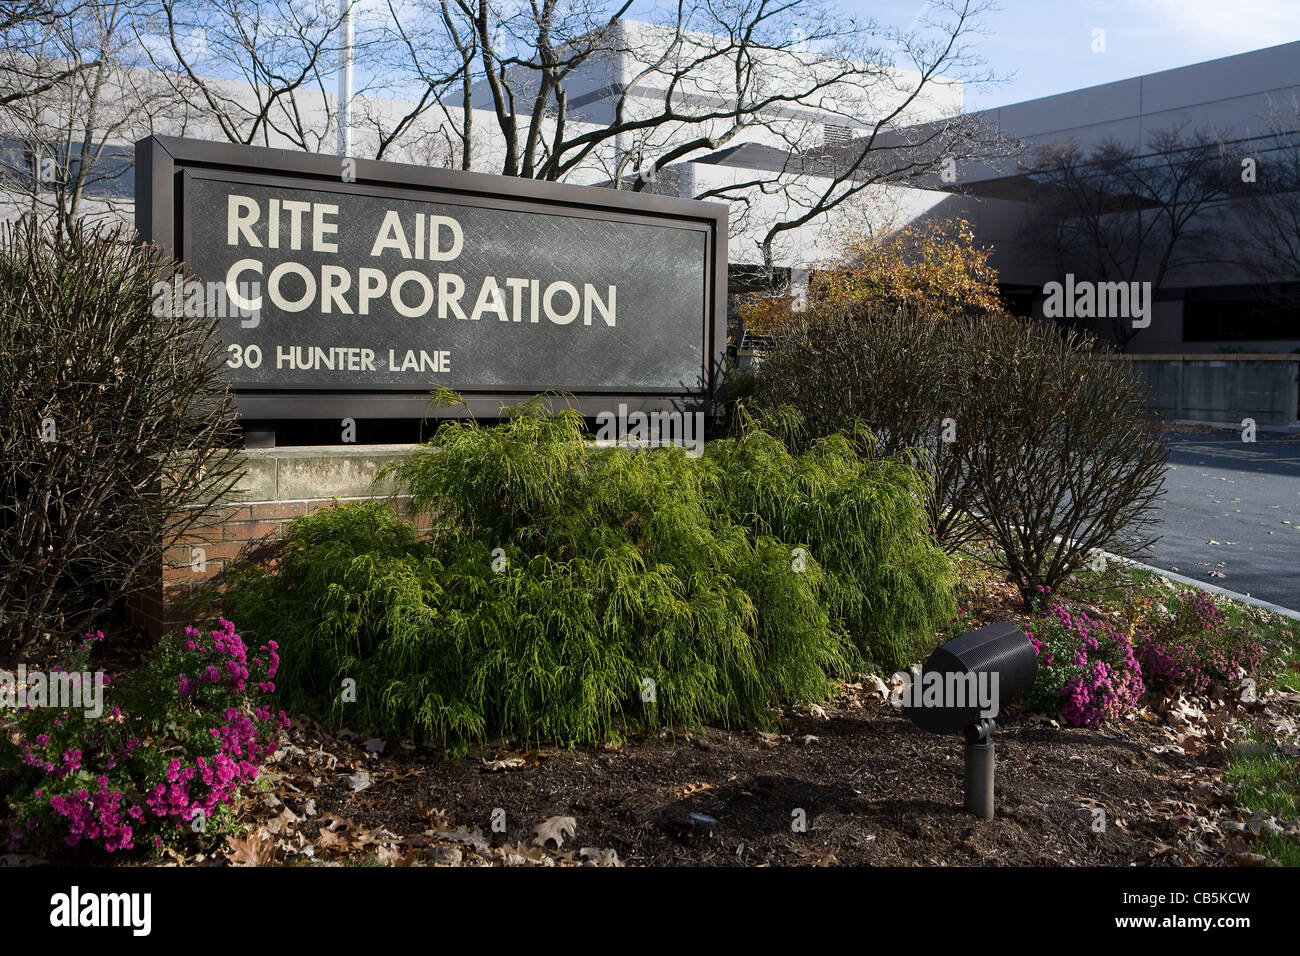 Il rito Aiuto Corporation la sede aziendale. Foto Stock